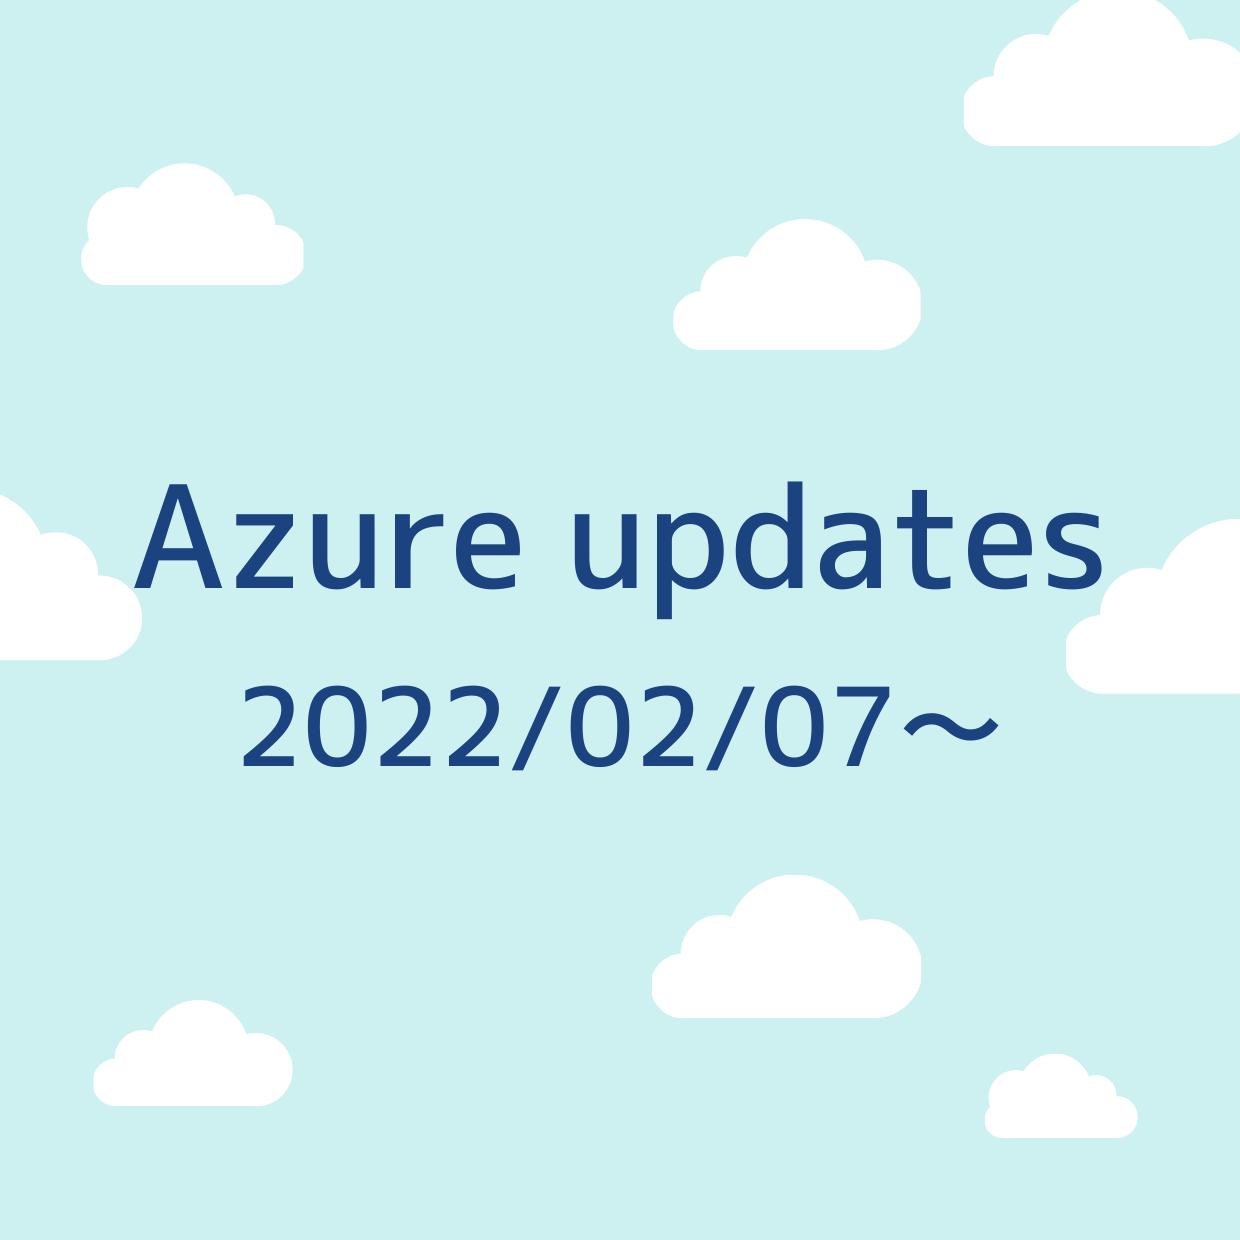 2022/02/07 週の Azure updates 日本語速報